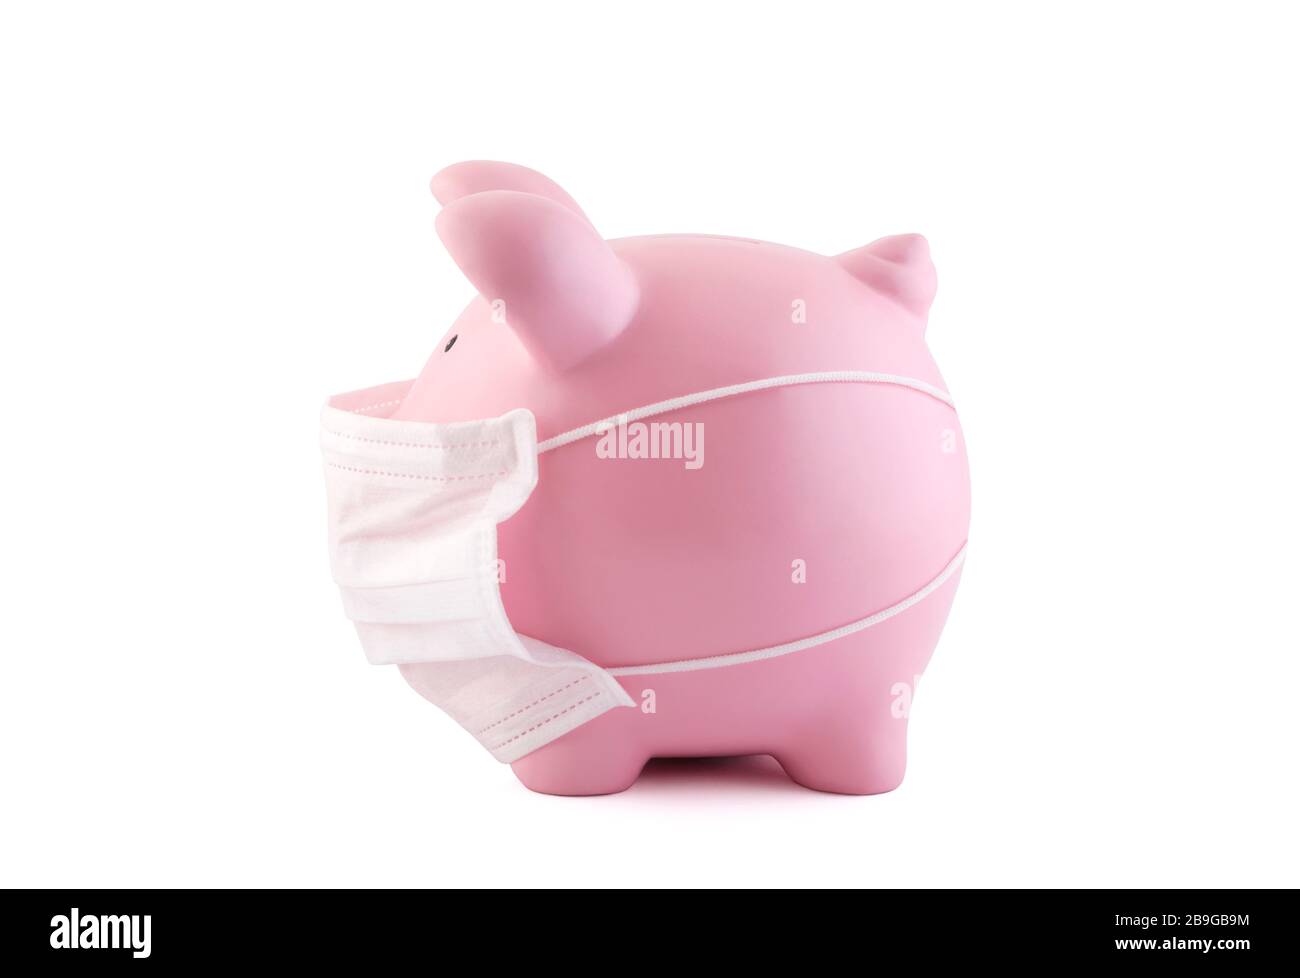 Pinkfarbene Piggy-Bank mit medizinischer Schutzmaske isoliert auf weiß mit Clipping-Pfad. Bankgeschäfte während eines Pandemiekonzepts Stockfoto